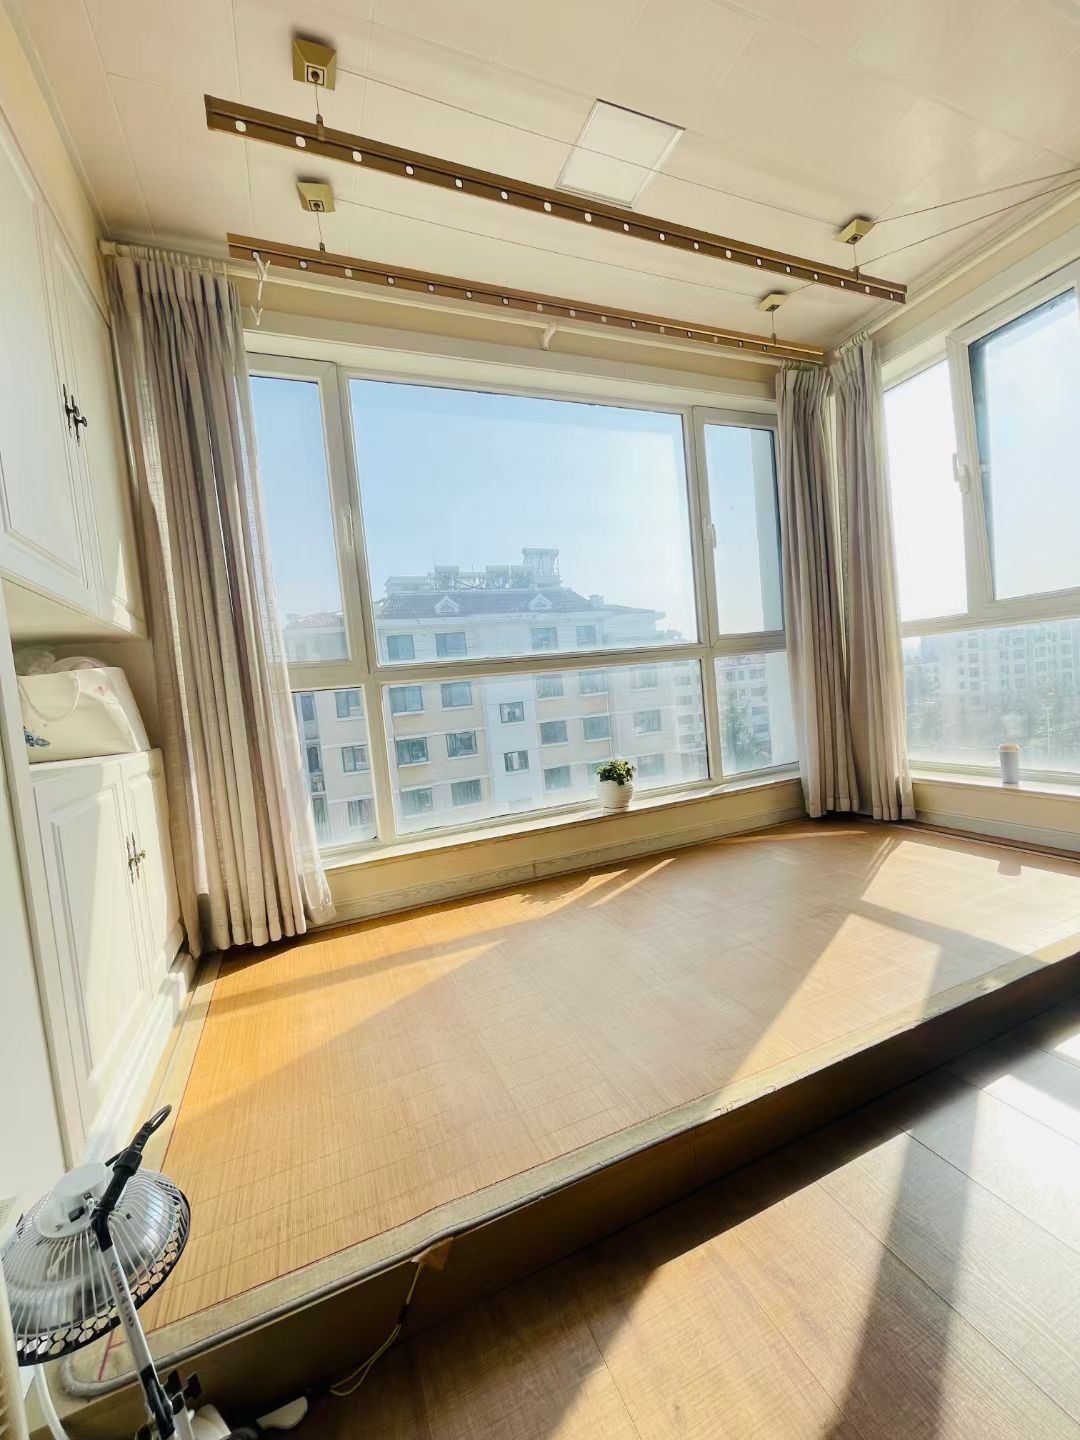 雅居苑框架4楼86平两室卫生间带窗46.8万不议价